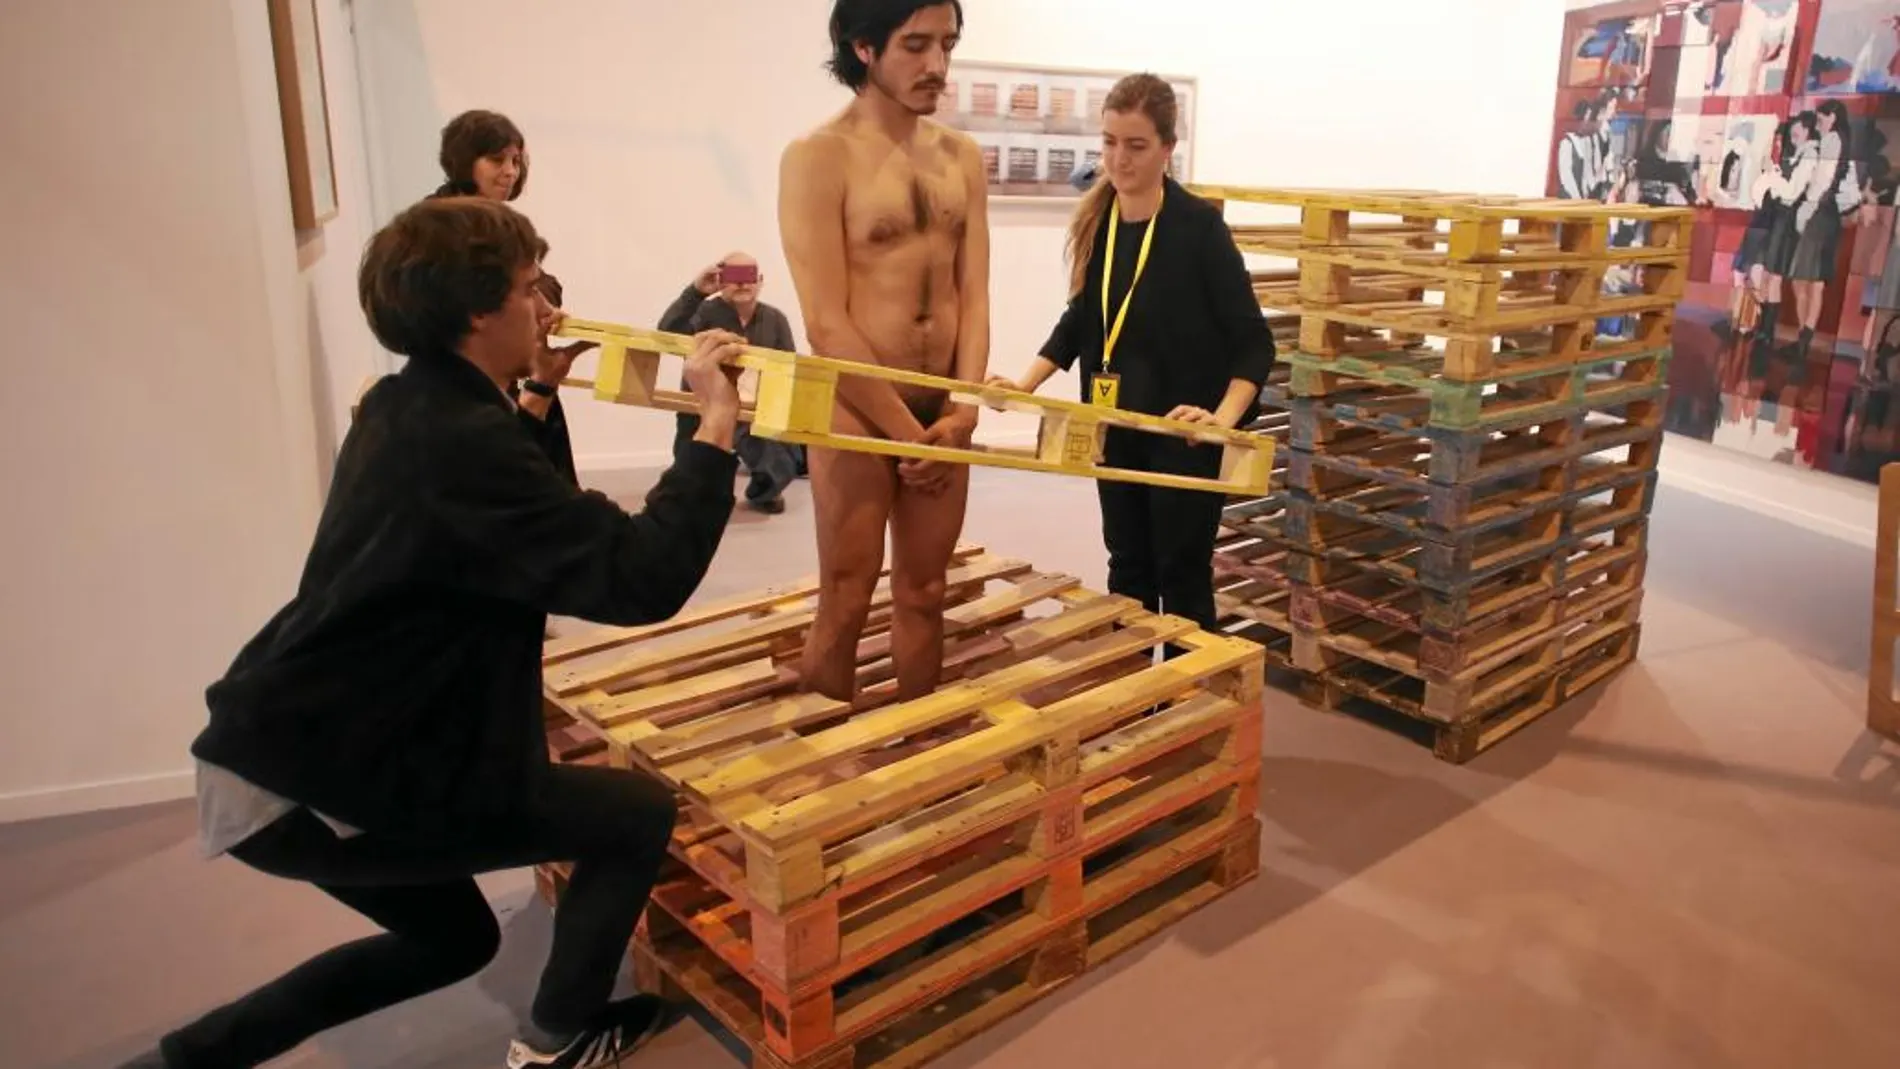 Enjaulado. Cada día, el artista Emilio Rojas se introduce en una «cárcel» de palés completamente desnudo y ayudado por el personal de la galería José de la Fuente